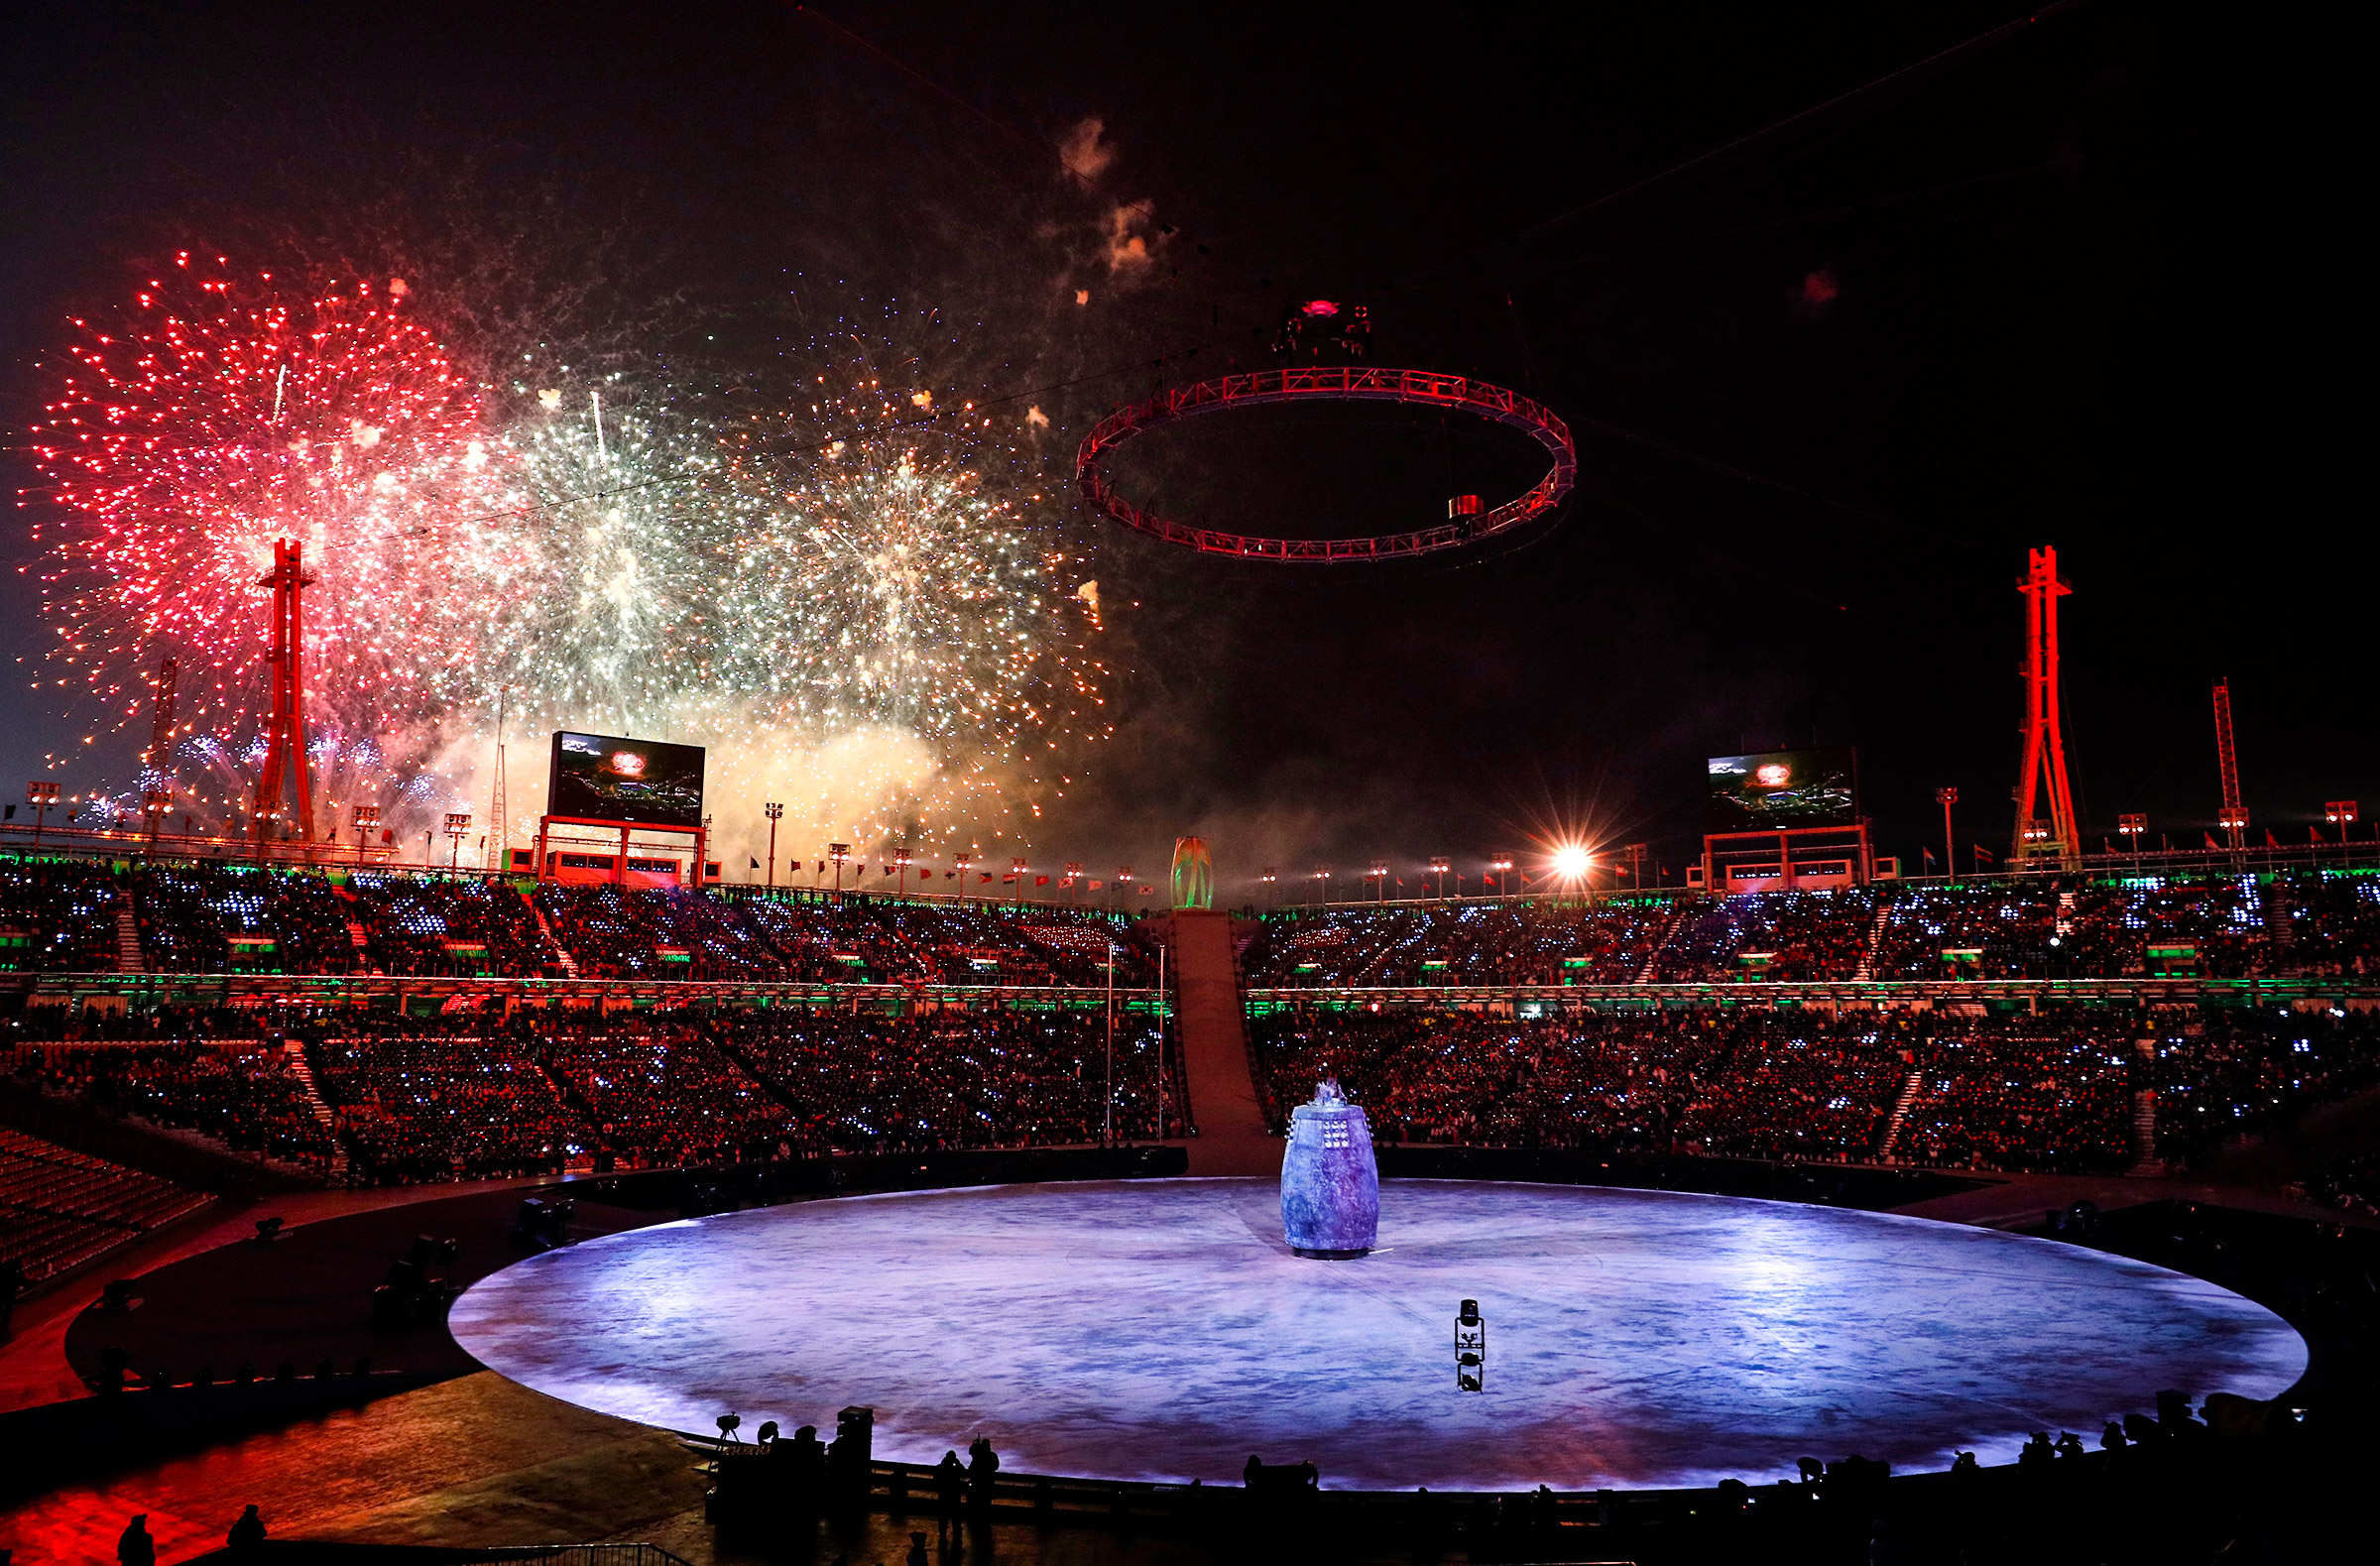 Церемония открытия проходила на стадионе Pyeongchang Olympic Stadium в городе Пхёнчхан. Об официальном открытии Олимпиады объявил президент Южной Кореи Мун Чжэ Ин.
